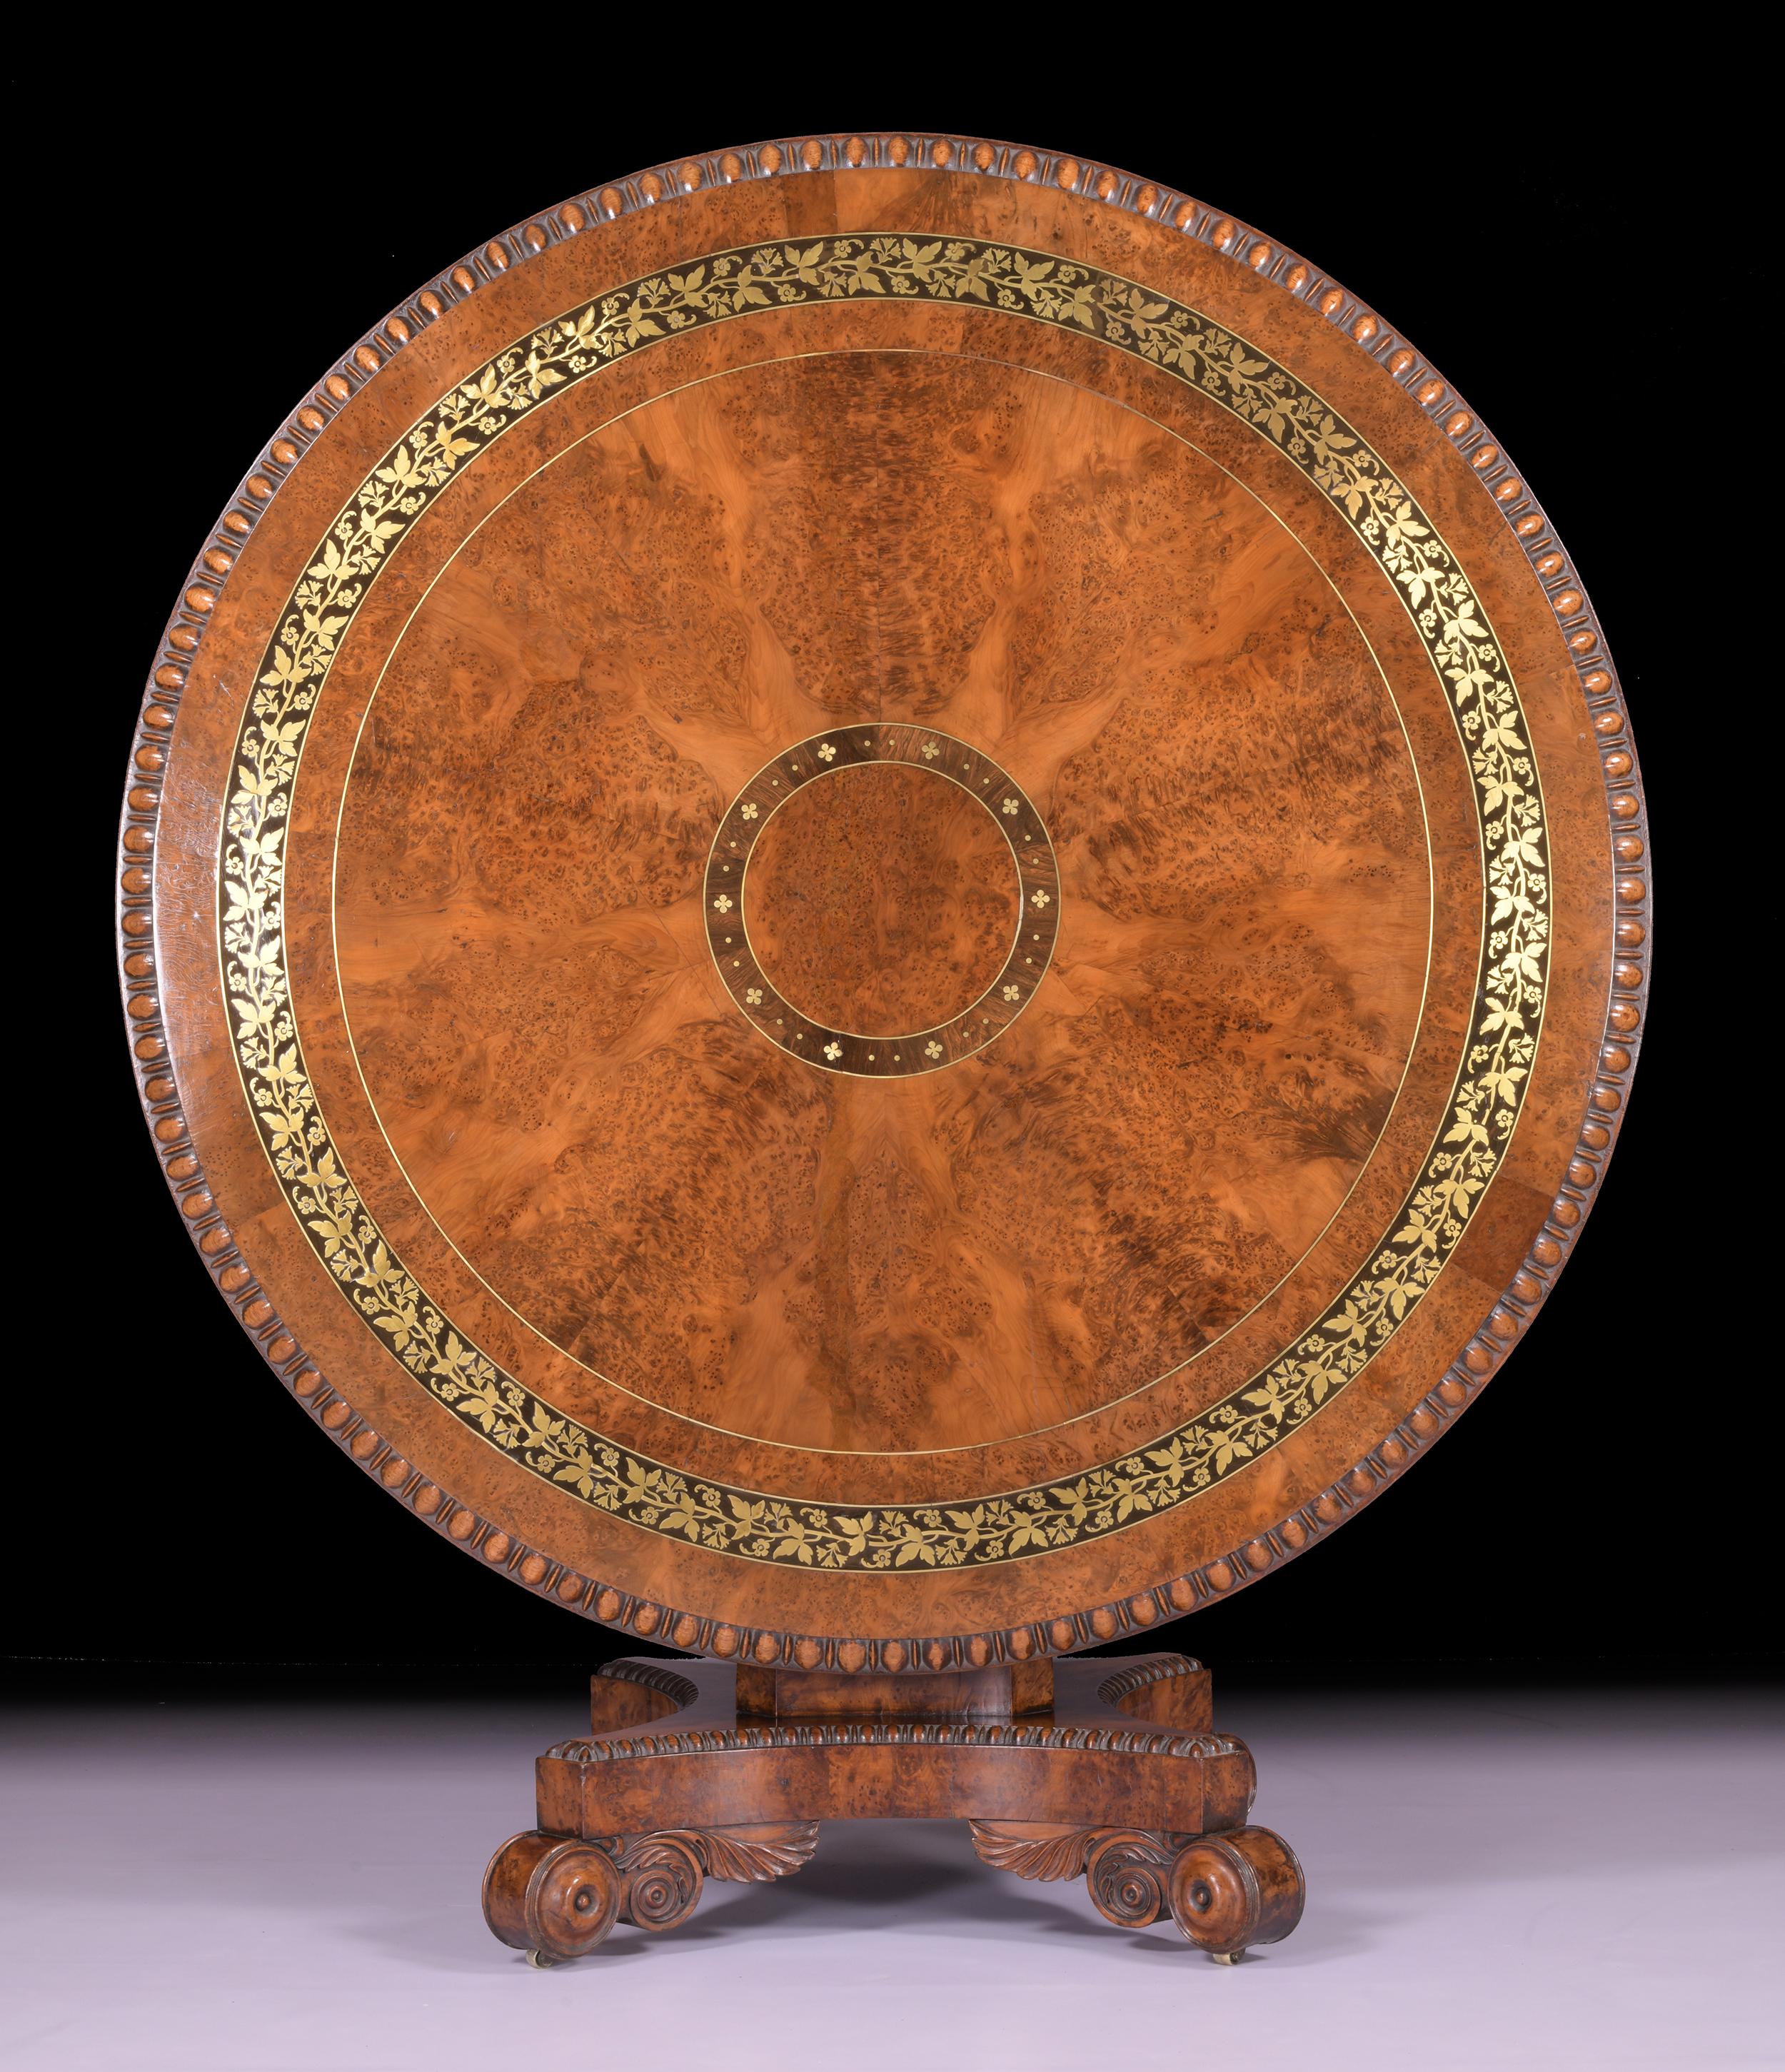 Exceptionnelle table centrale en loupe d'if de style Régence, attribuée à George Bullock. Le plateau circulaire présente un panneau central segmenté en ébène et un bandeau de marqueterie florale à enroulement feuillu en laiton, à l'intérieur d'une